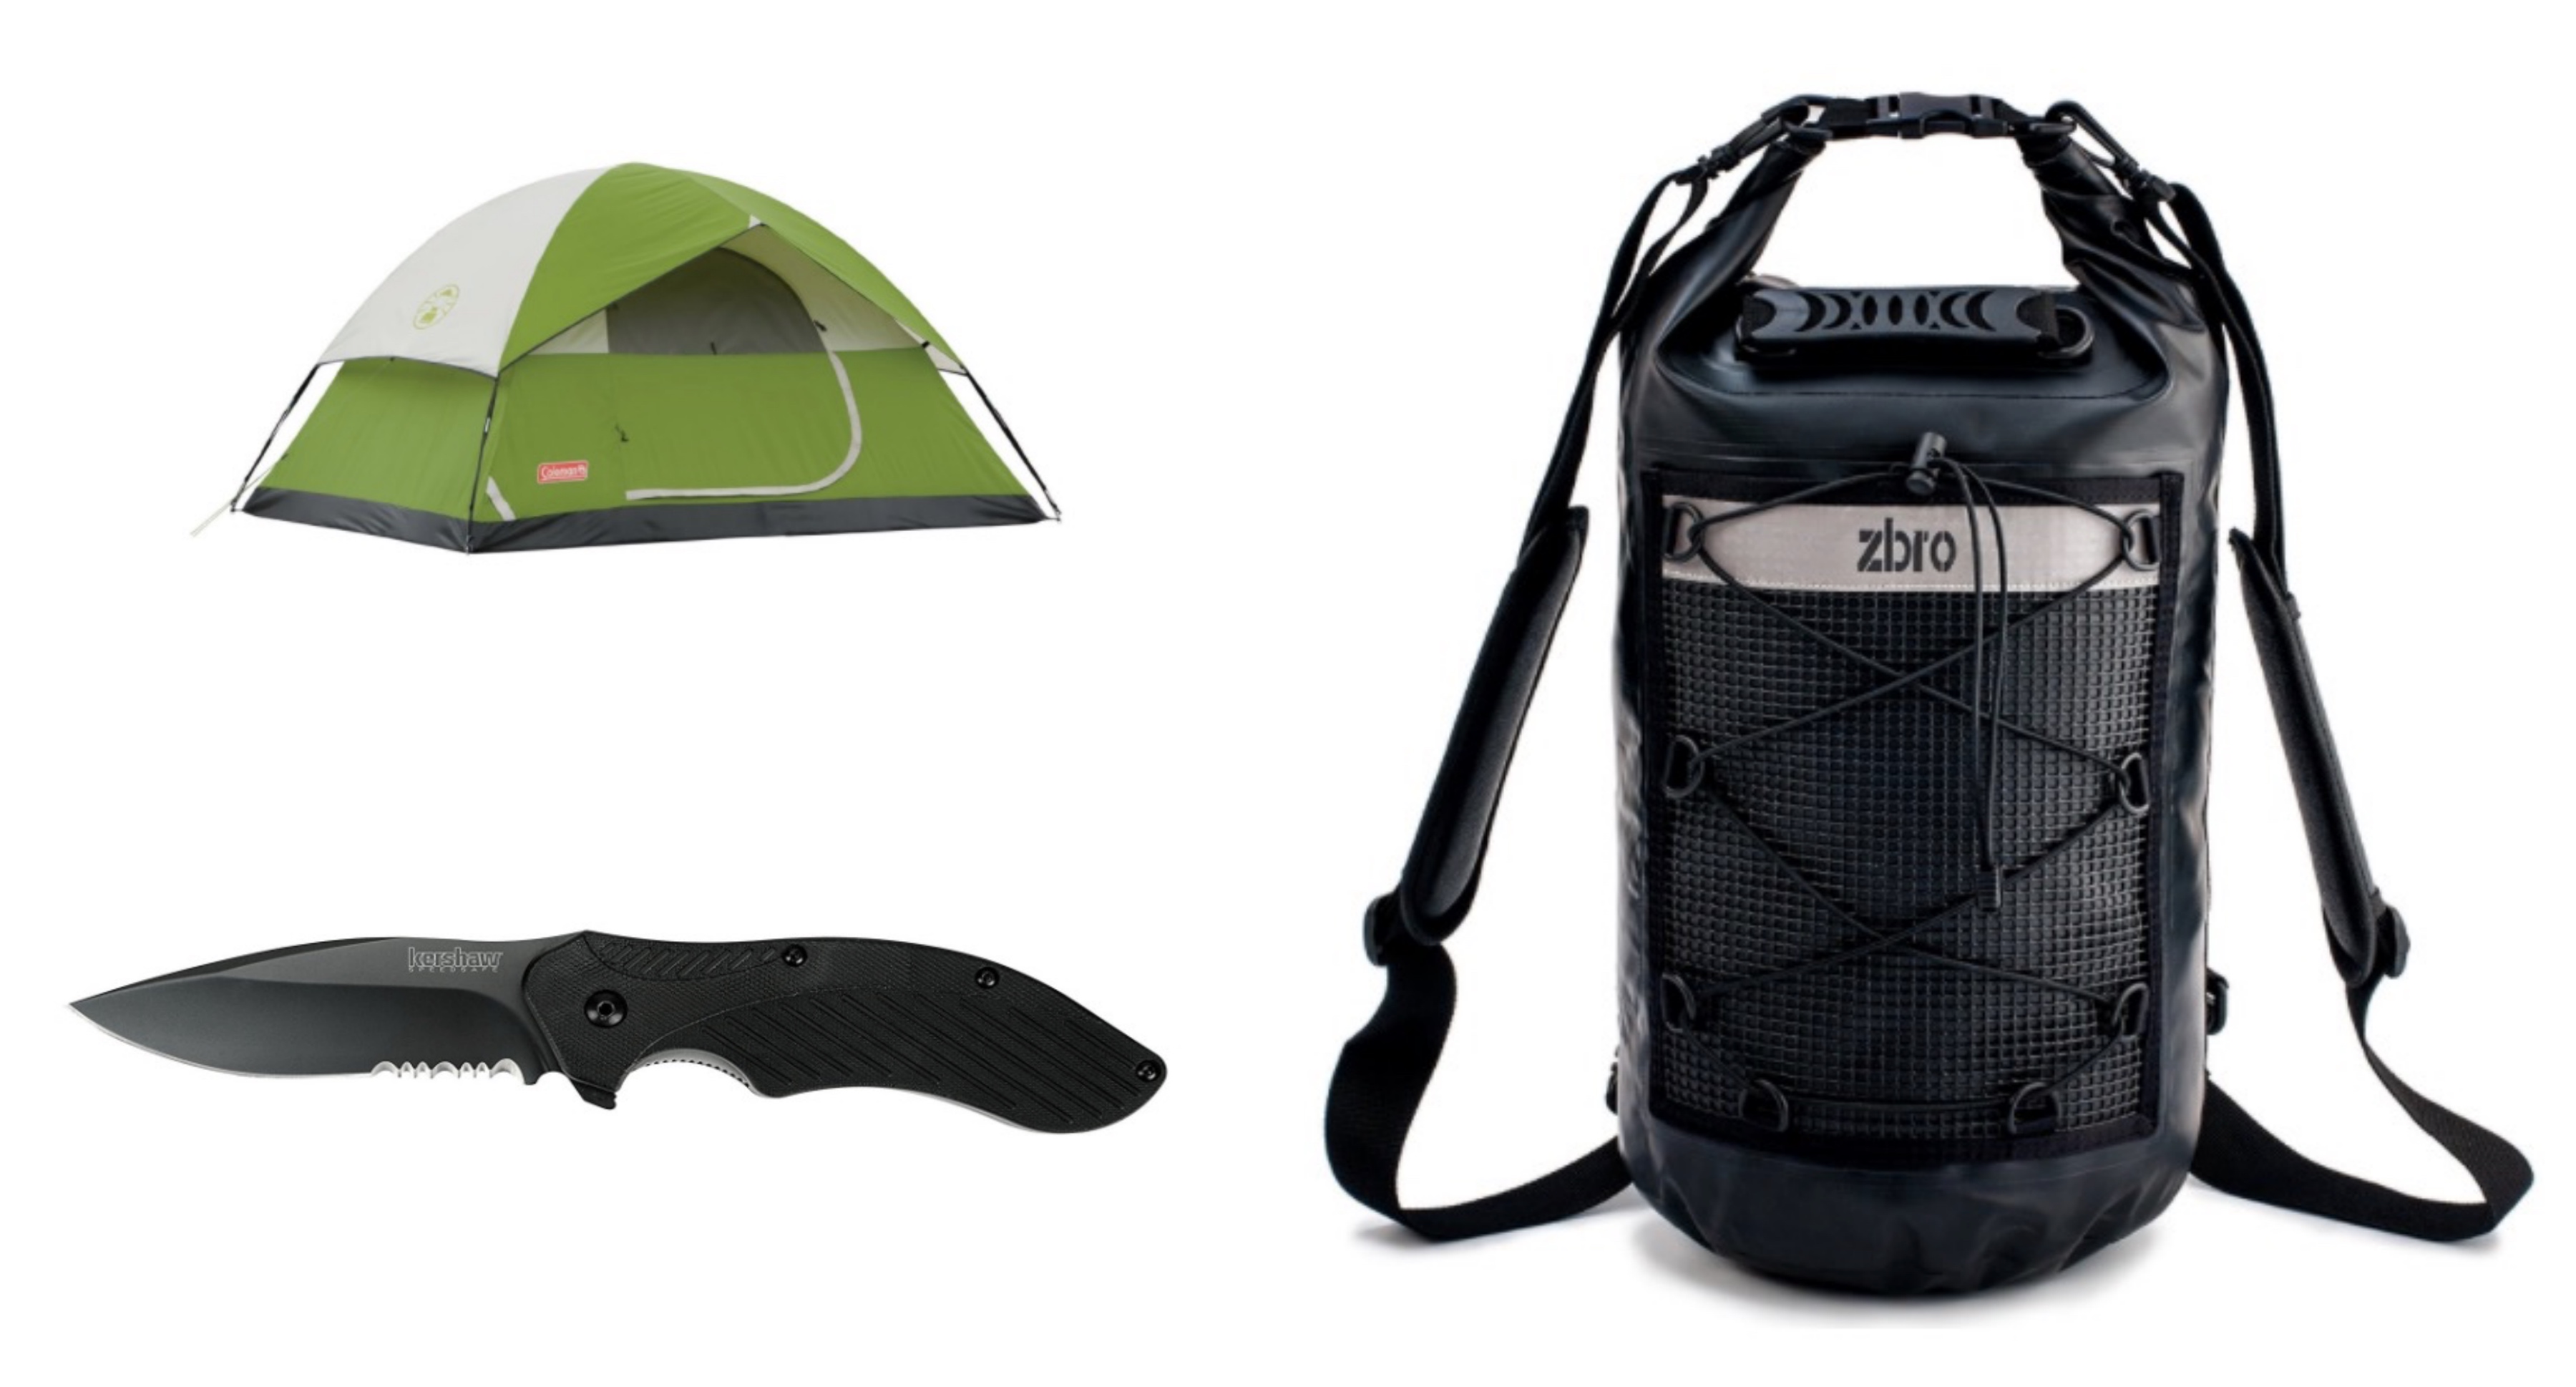 camping equipment deals